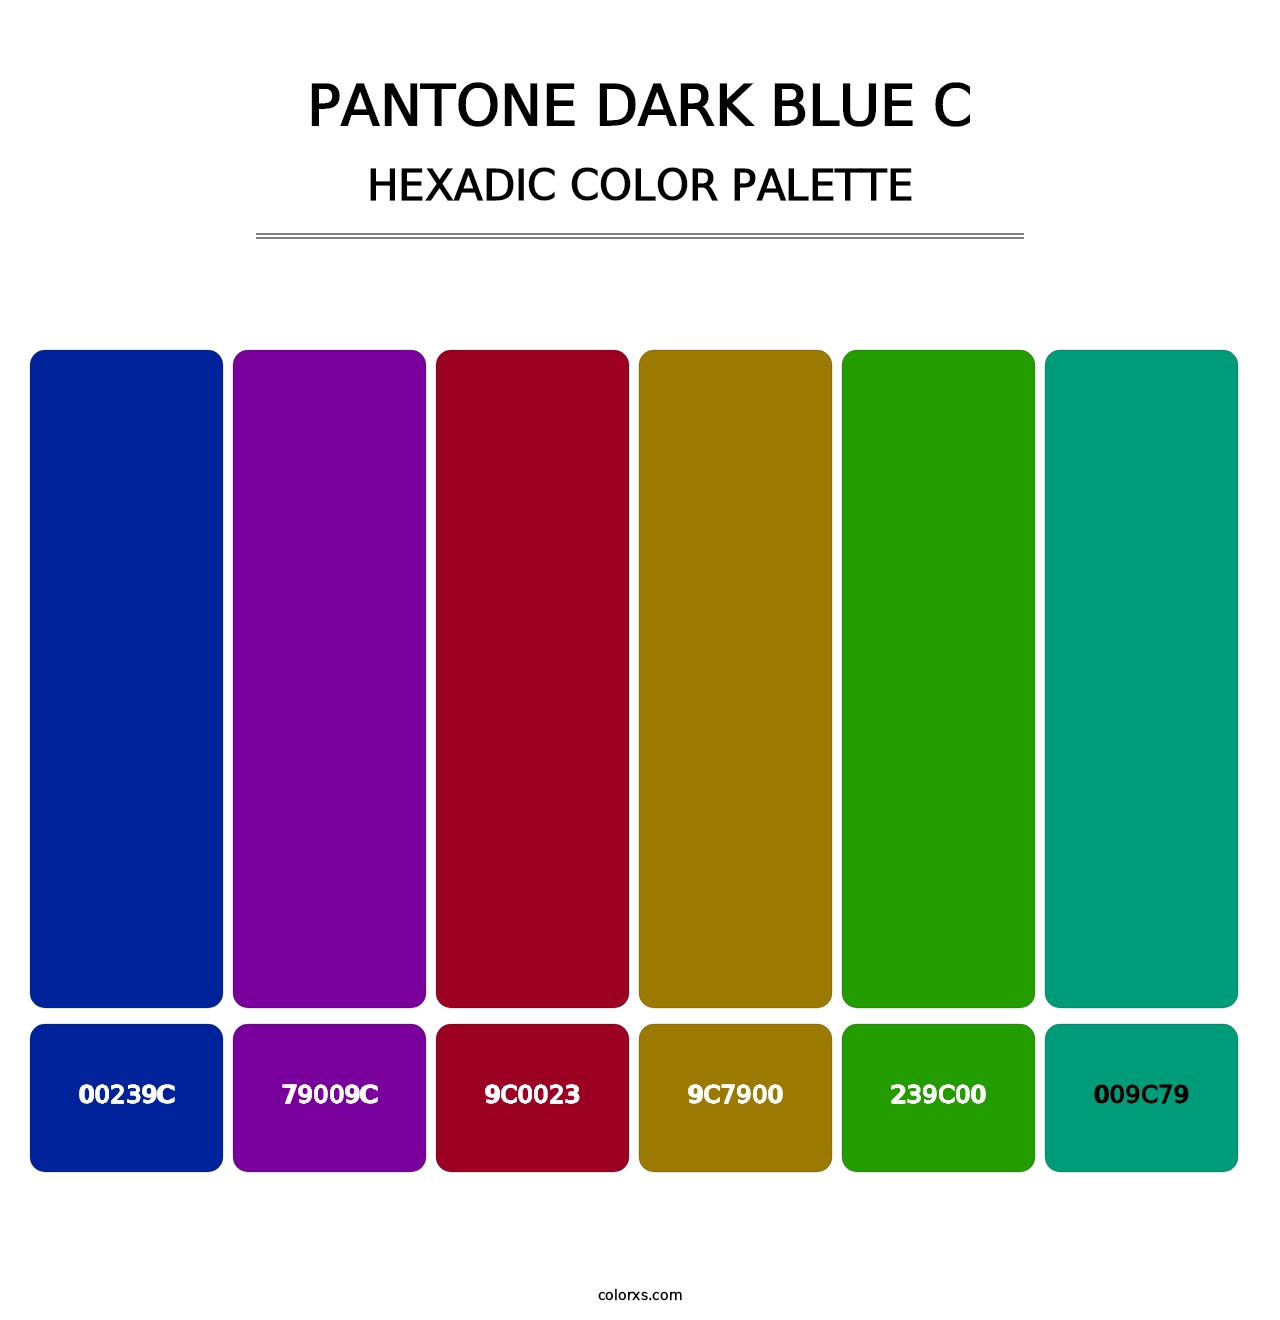 PANTONE Dark Blue C - Hexadic Color Palette